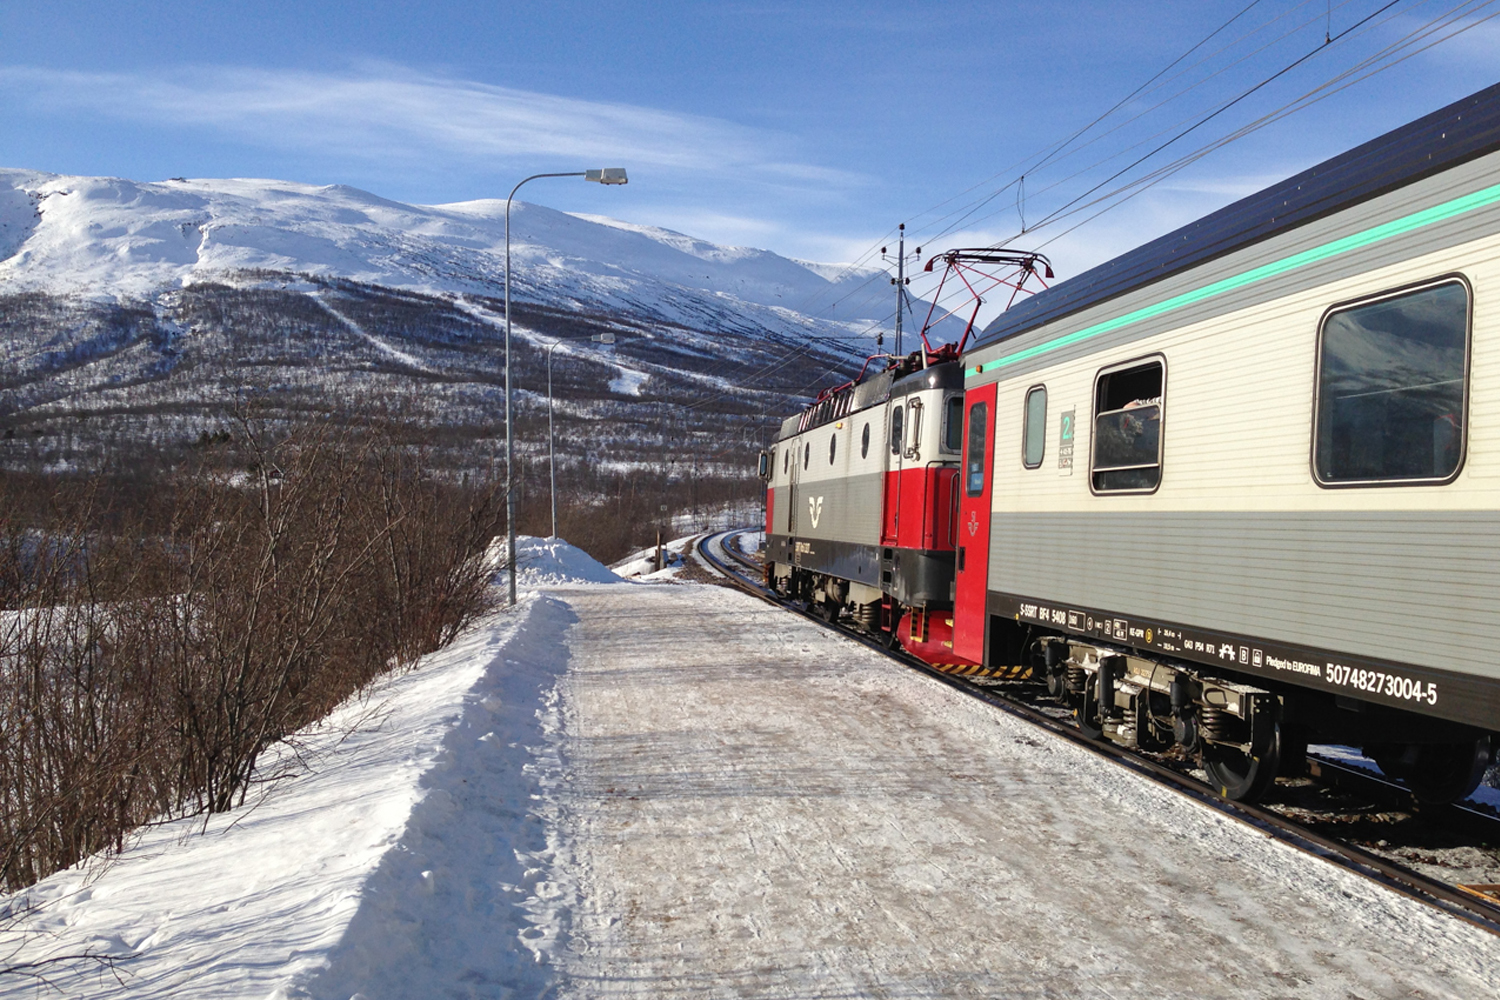 SJ: How is Sweden's Railway System?